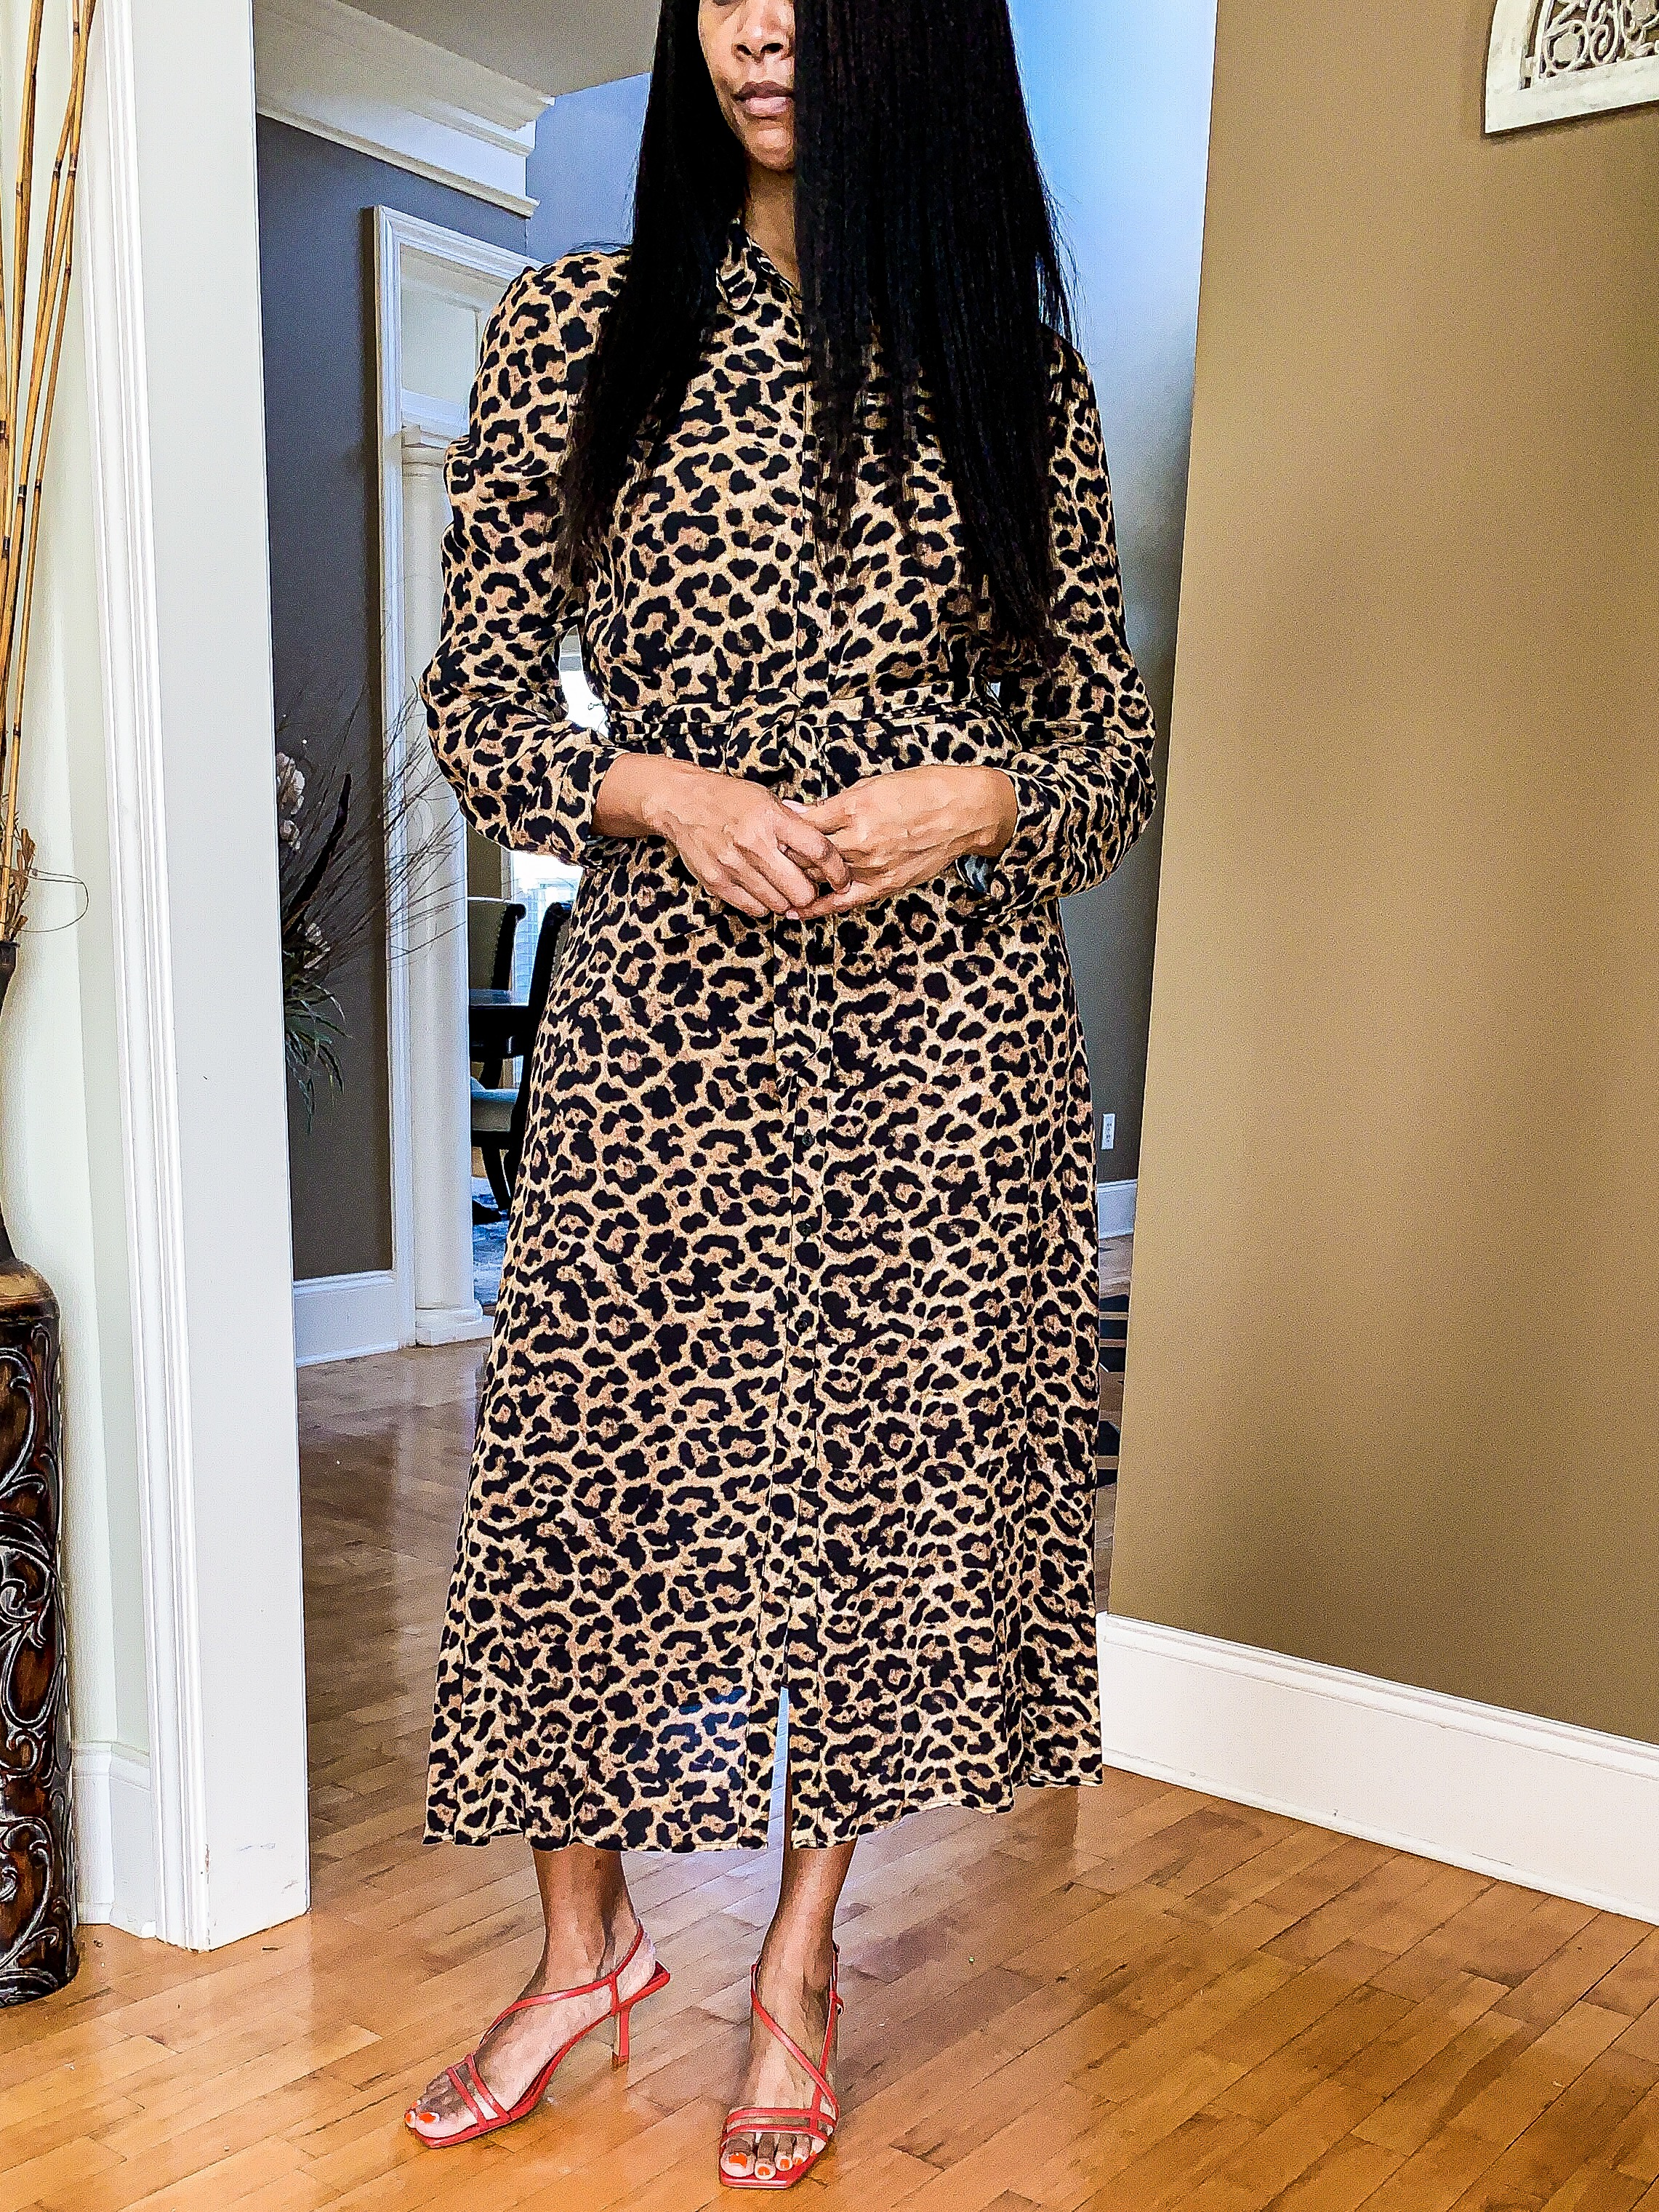 classy leopard print dress